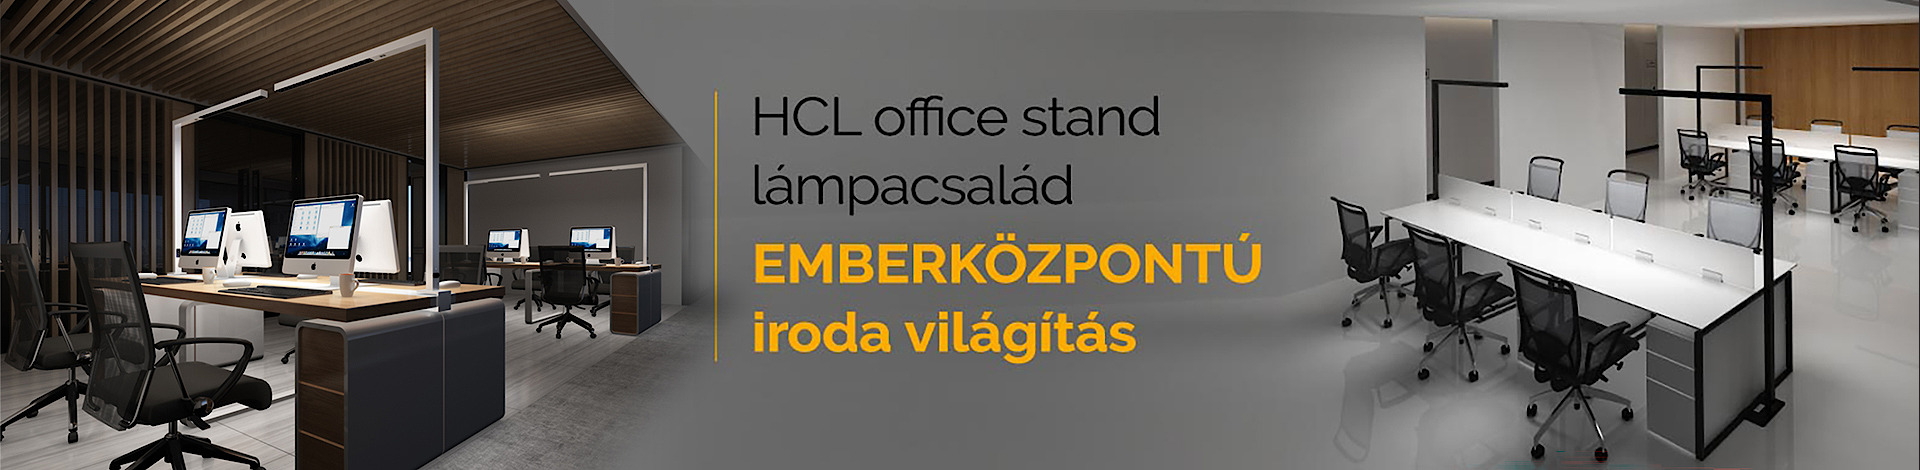 Luminis - Emberközpontú világítás HCL Office lámpákkal